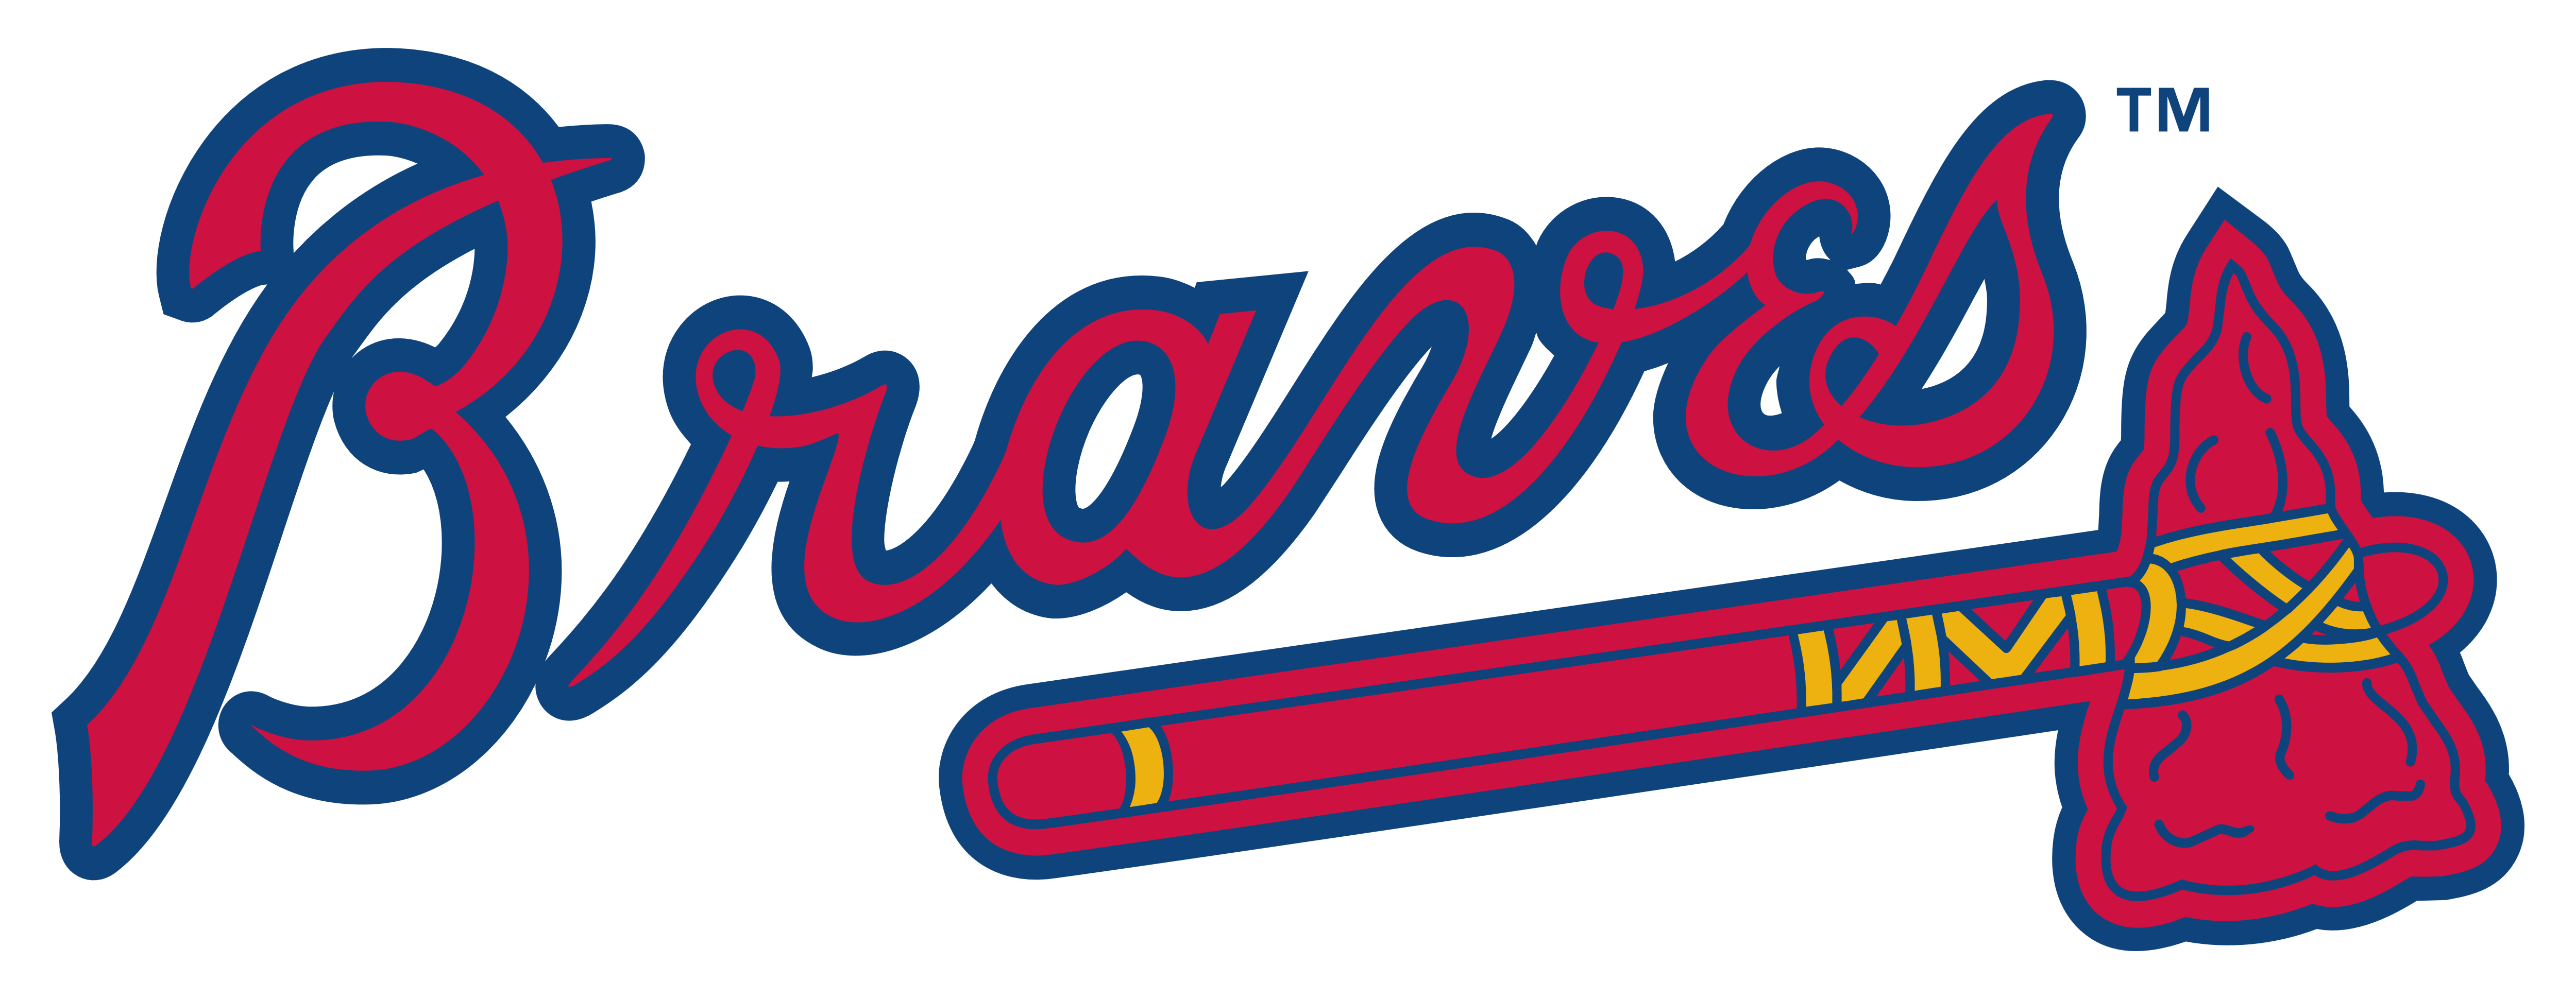 Atlanta Braves Logos Download